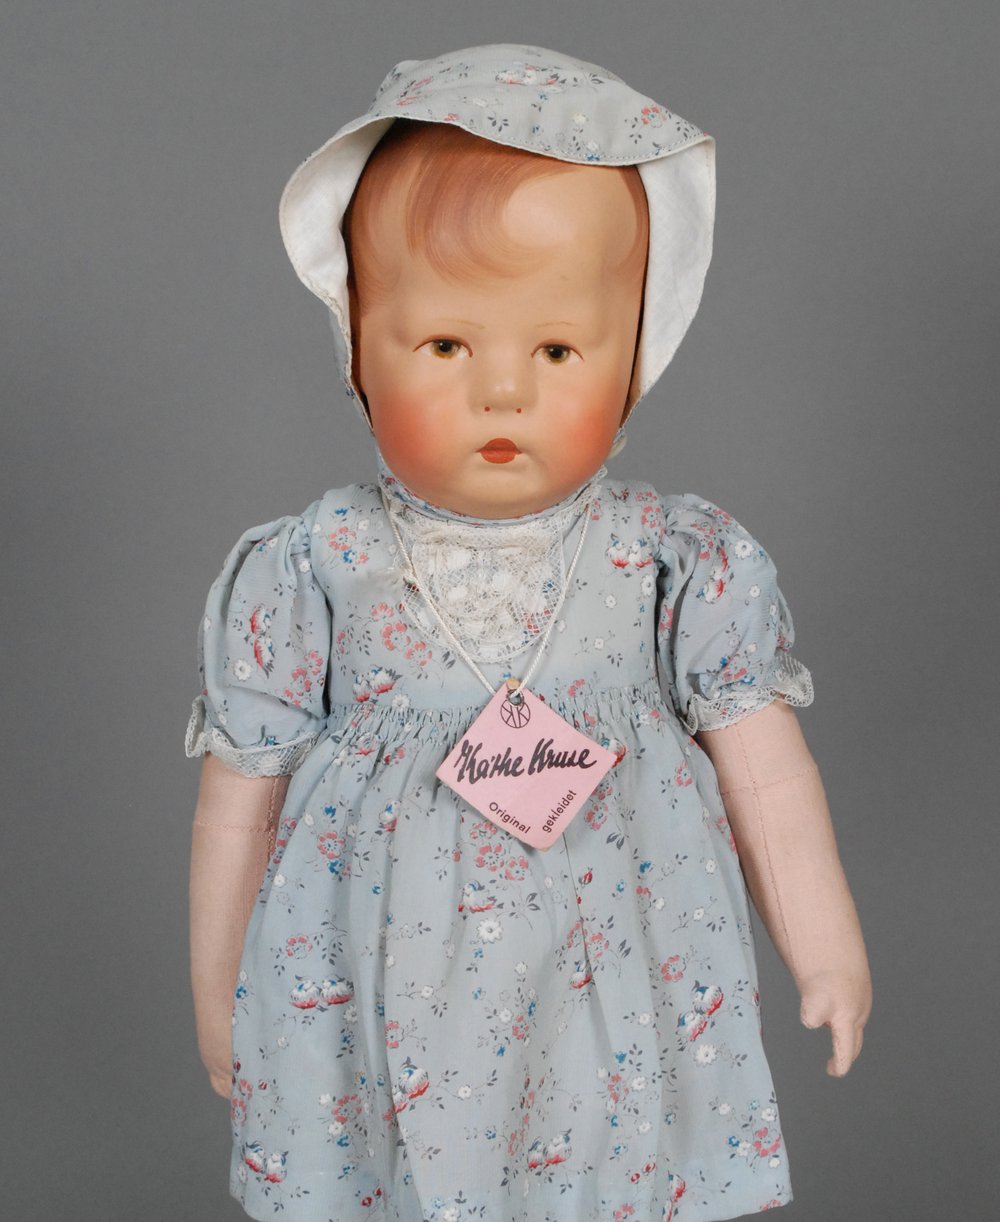 Kathe Kruse — Carmel Doll Shop